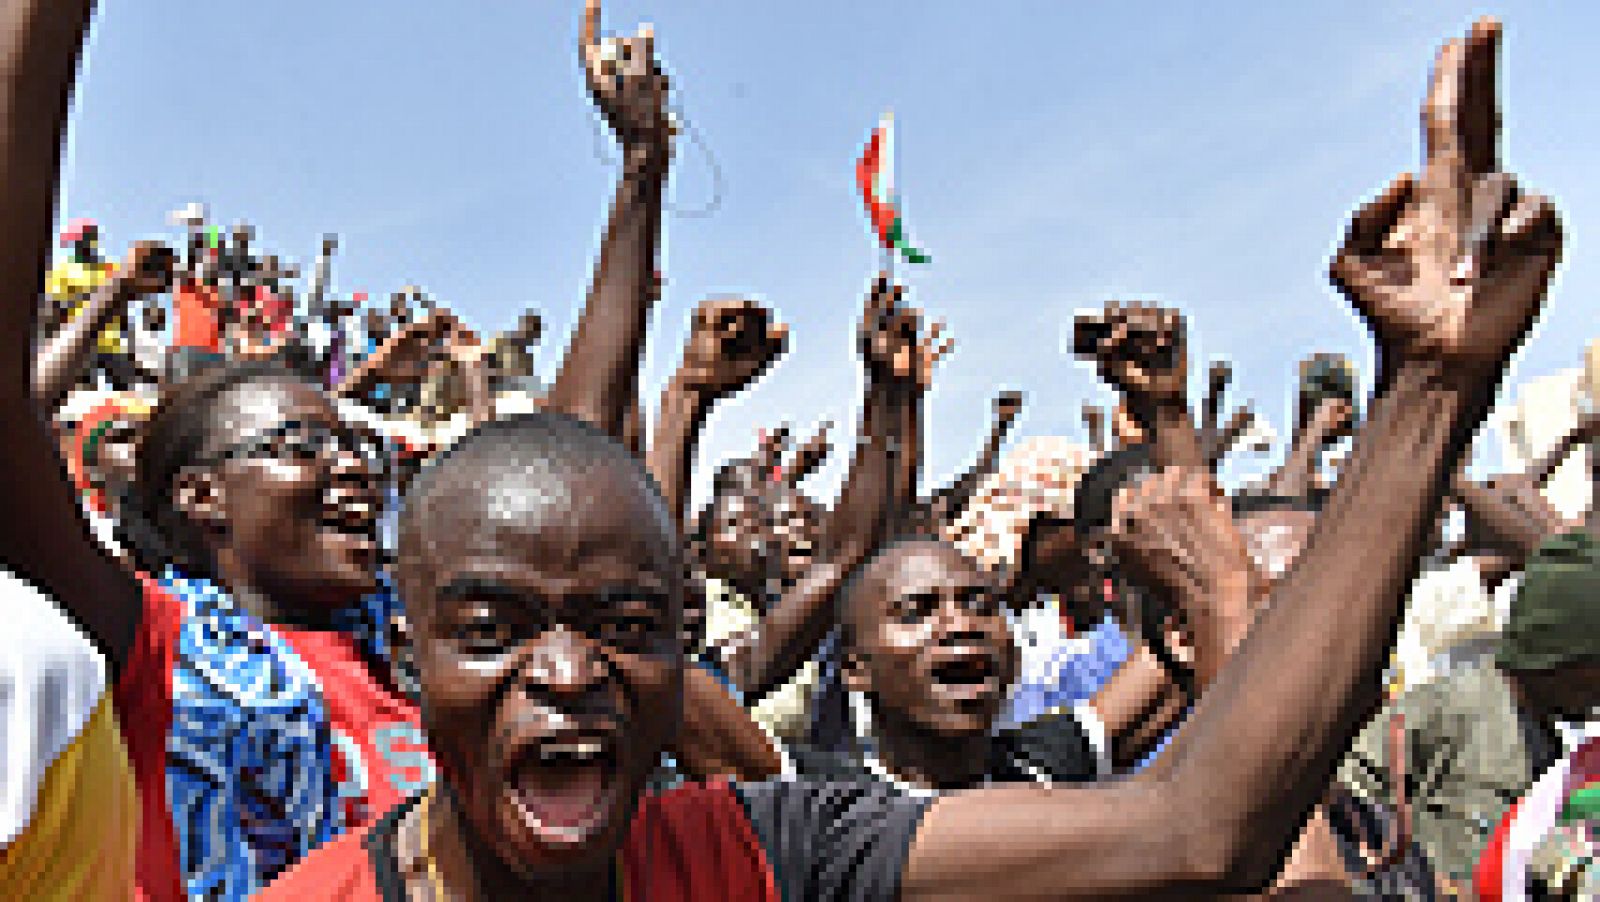  El presidente de Burkina Faso, Blaise Compaoré, ha dimitido de su cargo después de tres días de protestas masivas y violentas en las calles del país que reclamaban su marcha tras 27 años en el poder, adonde llegó mediante un golpe de Estado.